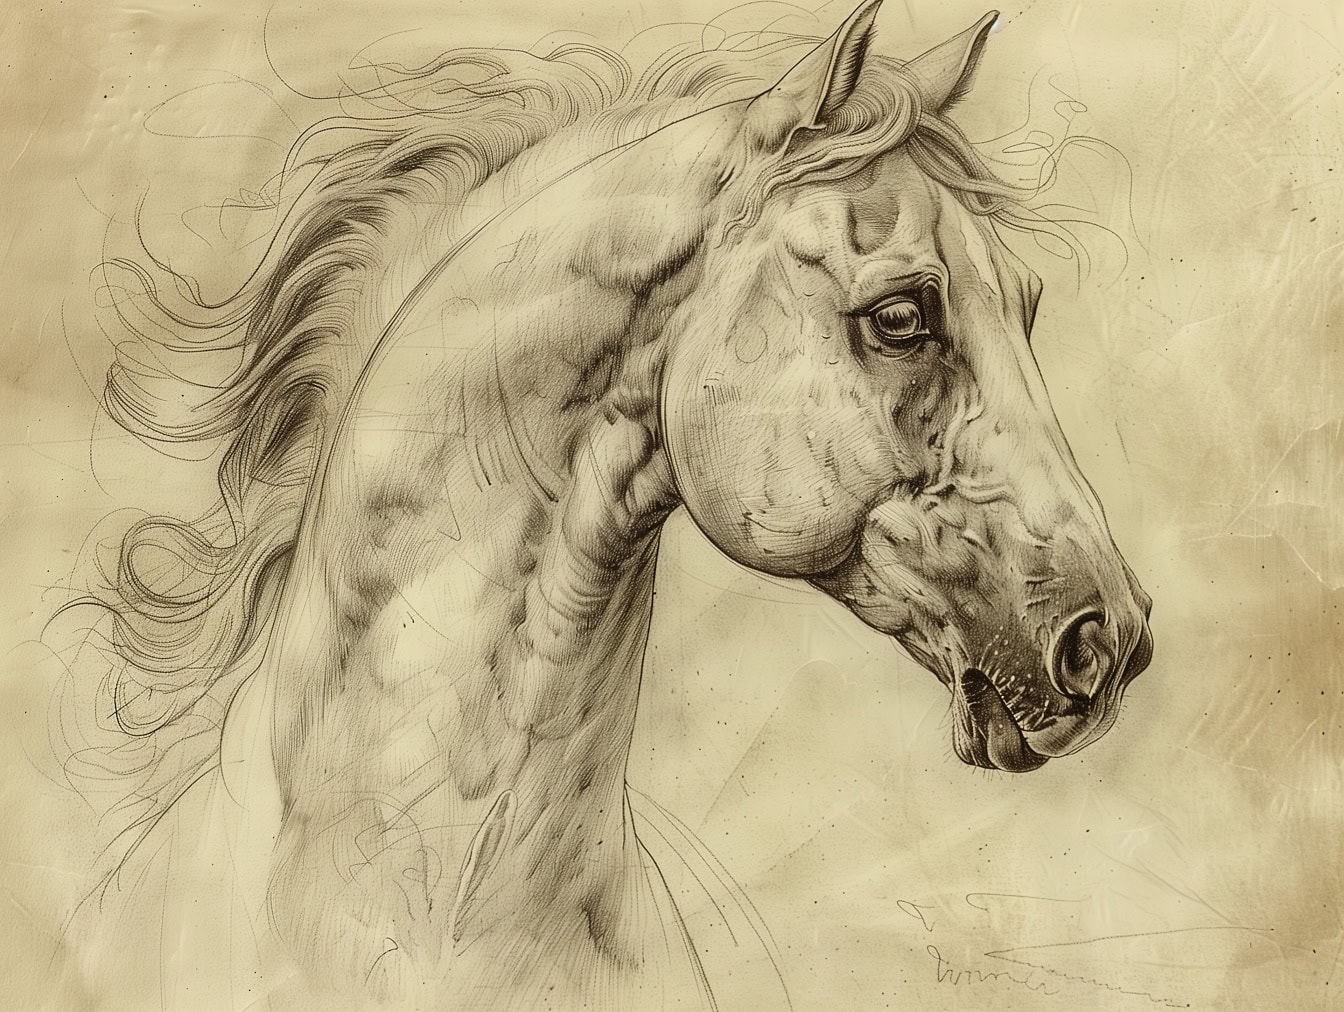 Супер детализированный эскиз головы лошади с деталями носа, рта и глаза жеребца